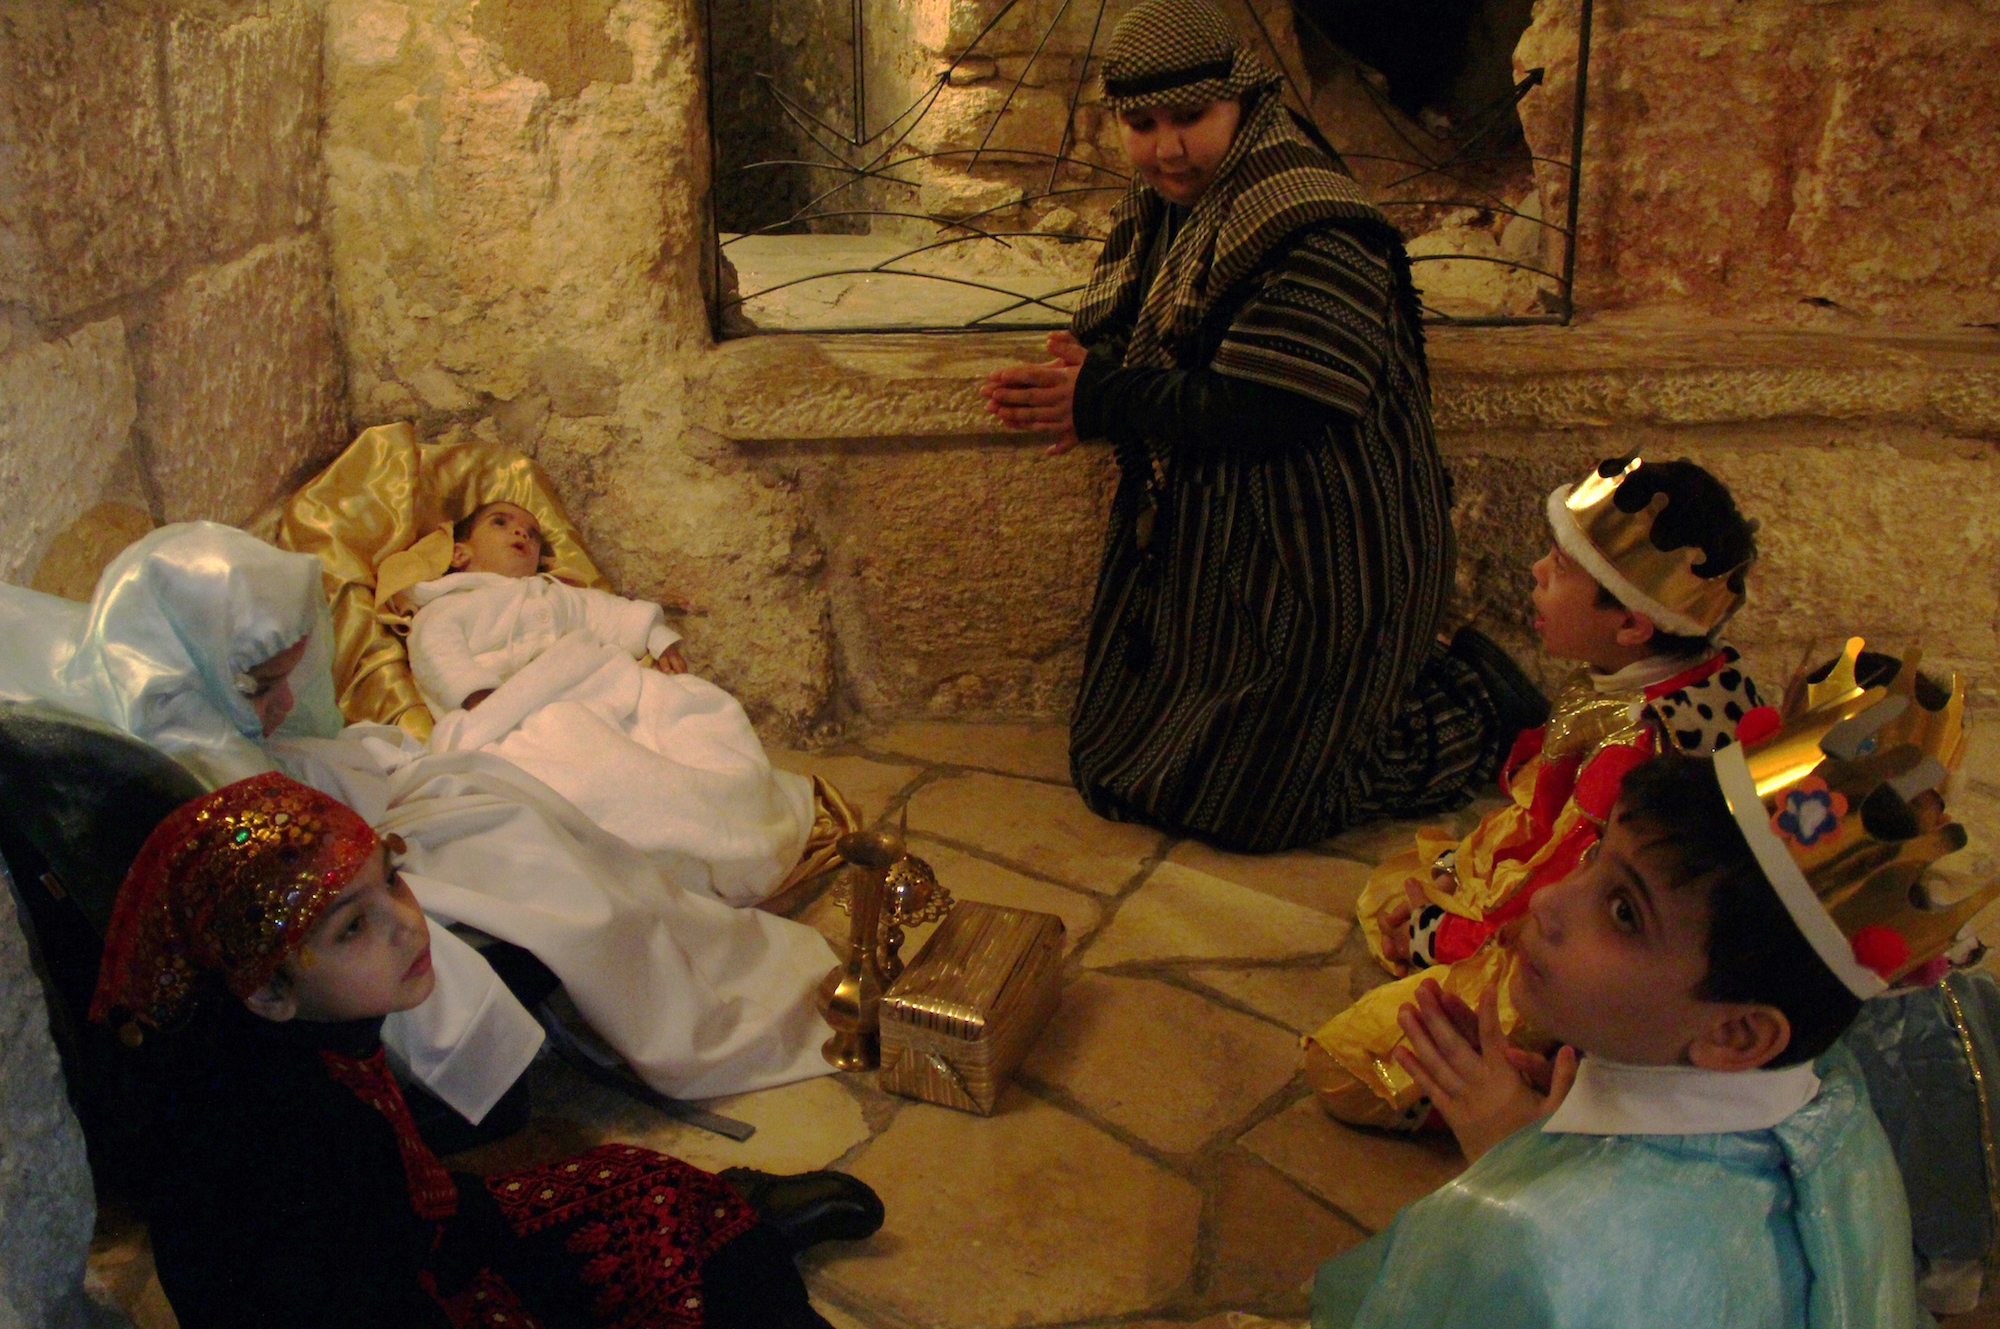 The Nativity Play in Bethlehem